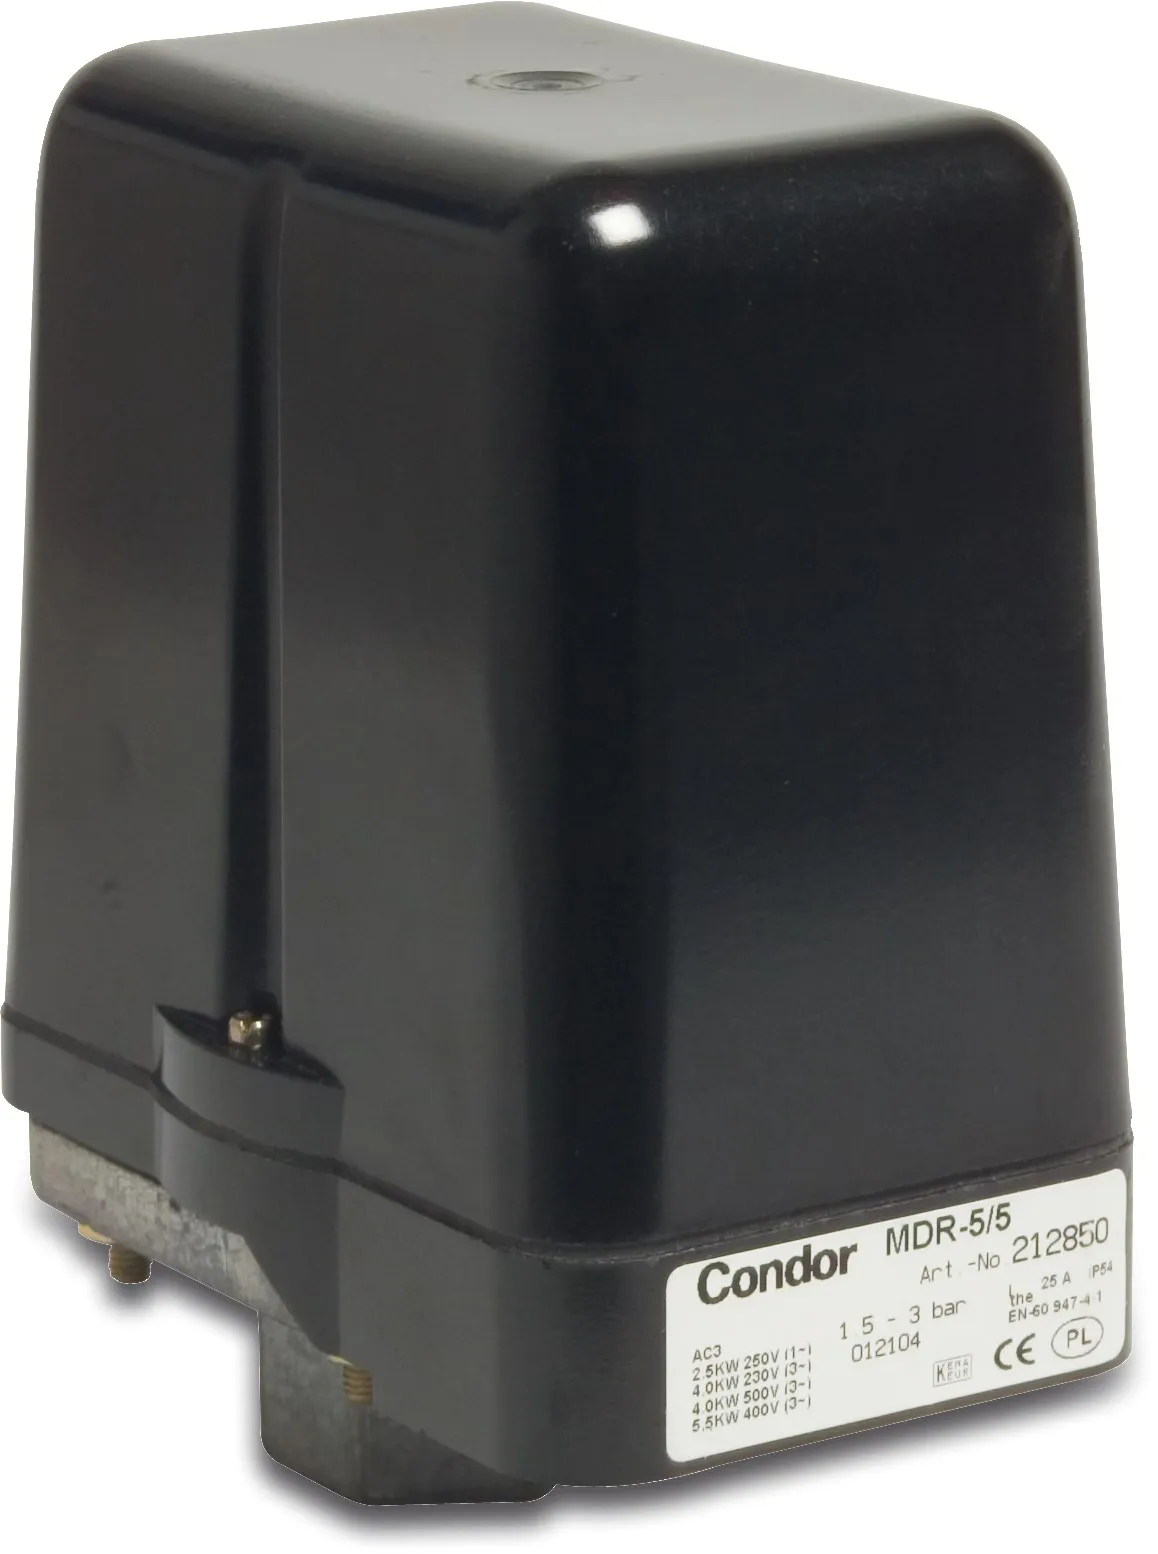 Condor Wyłącznik ciśnieniowy 1/2" GW 25A 230/400VAC type MDR 5-5